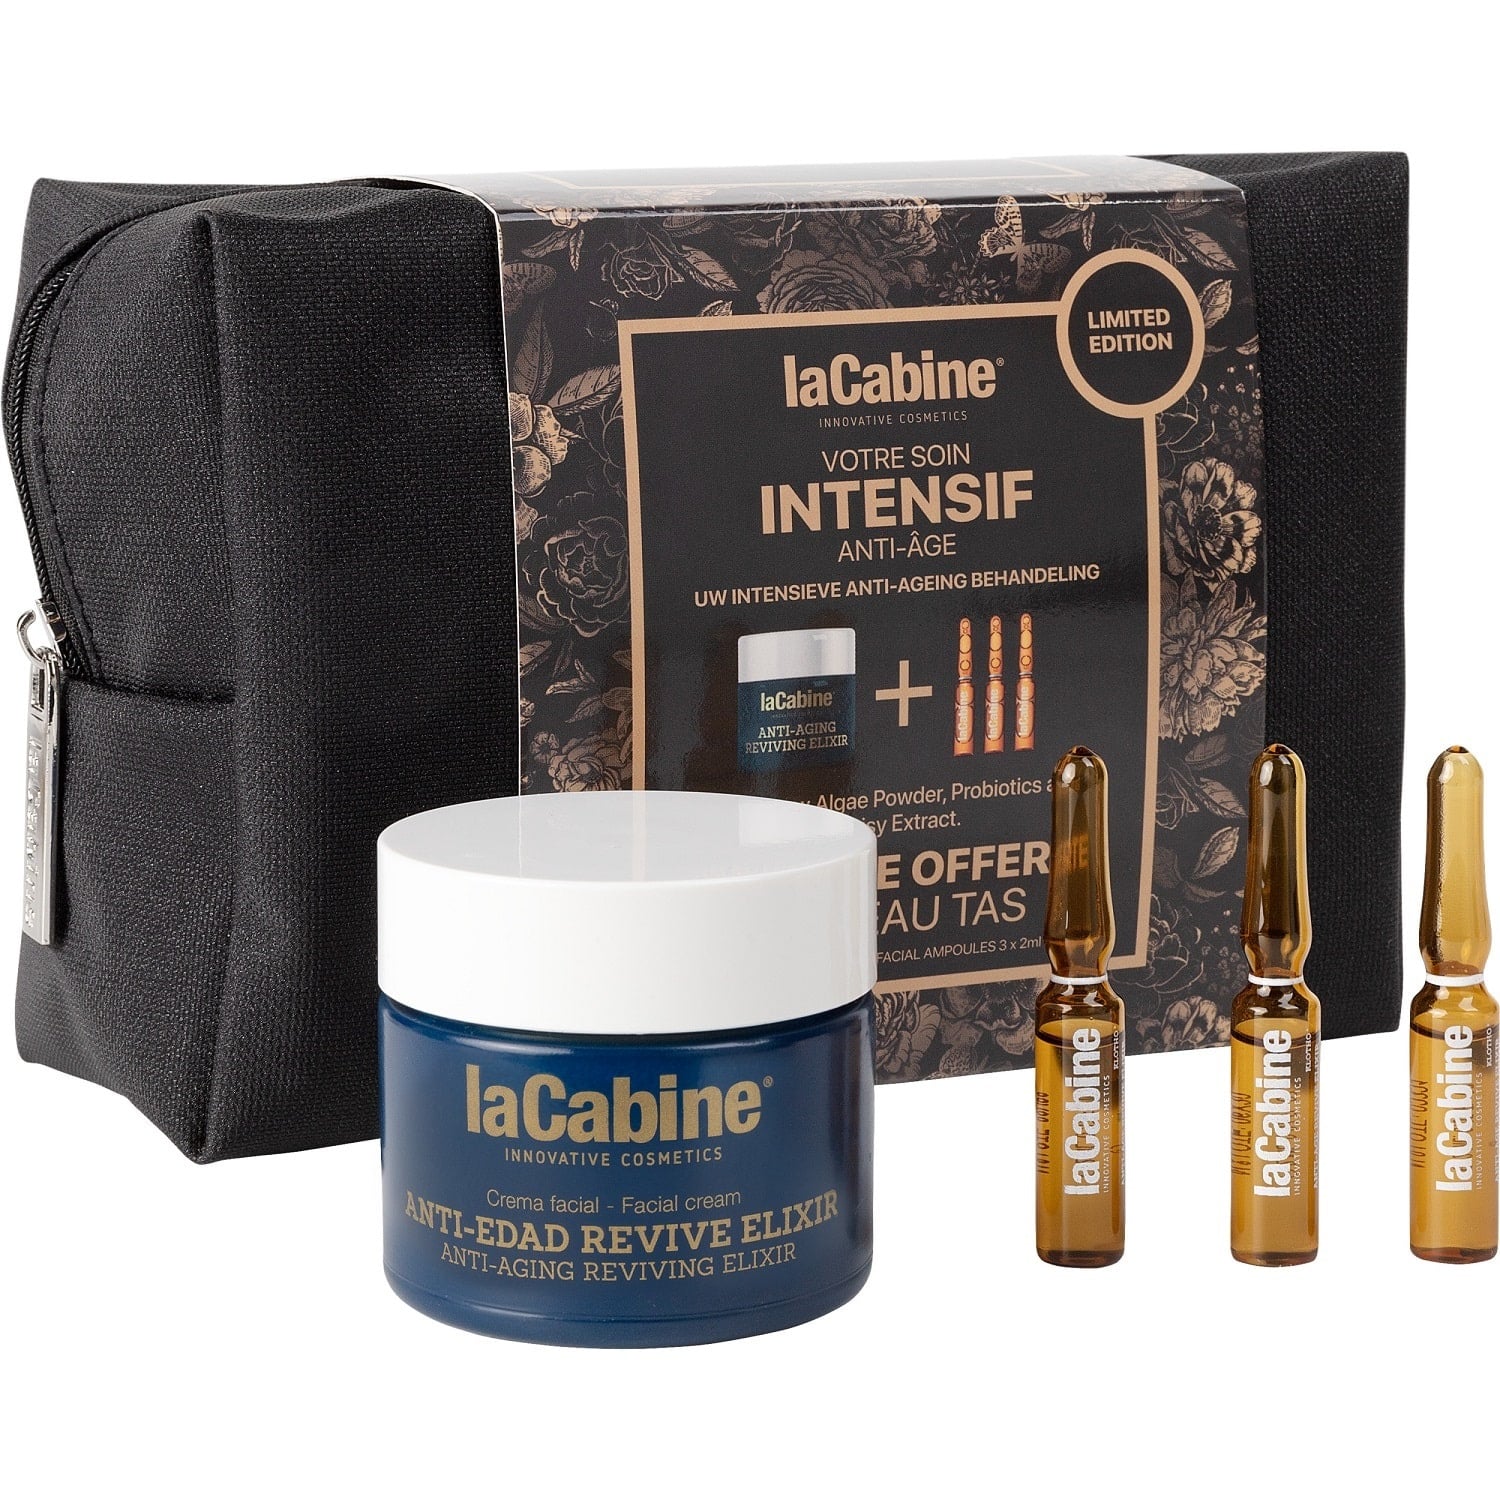 La Cabine Подарочный набор Revive Elixir Limited Edition в косметичке: крем для лица 50 мл + сыворотка 3 шт х 2 мл (La Cabine, Наборы средств для лица)